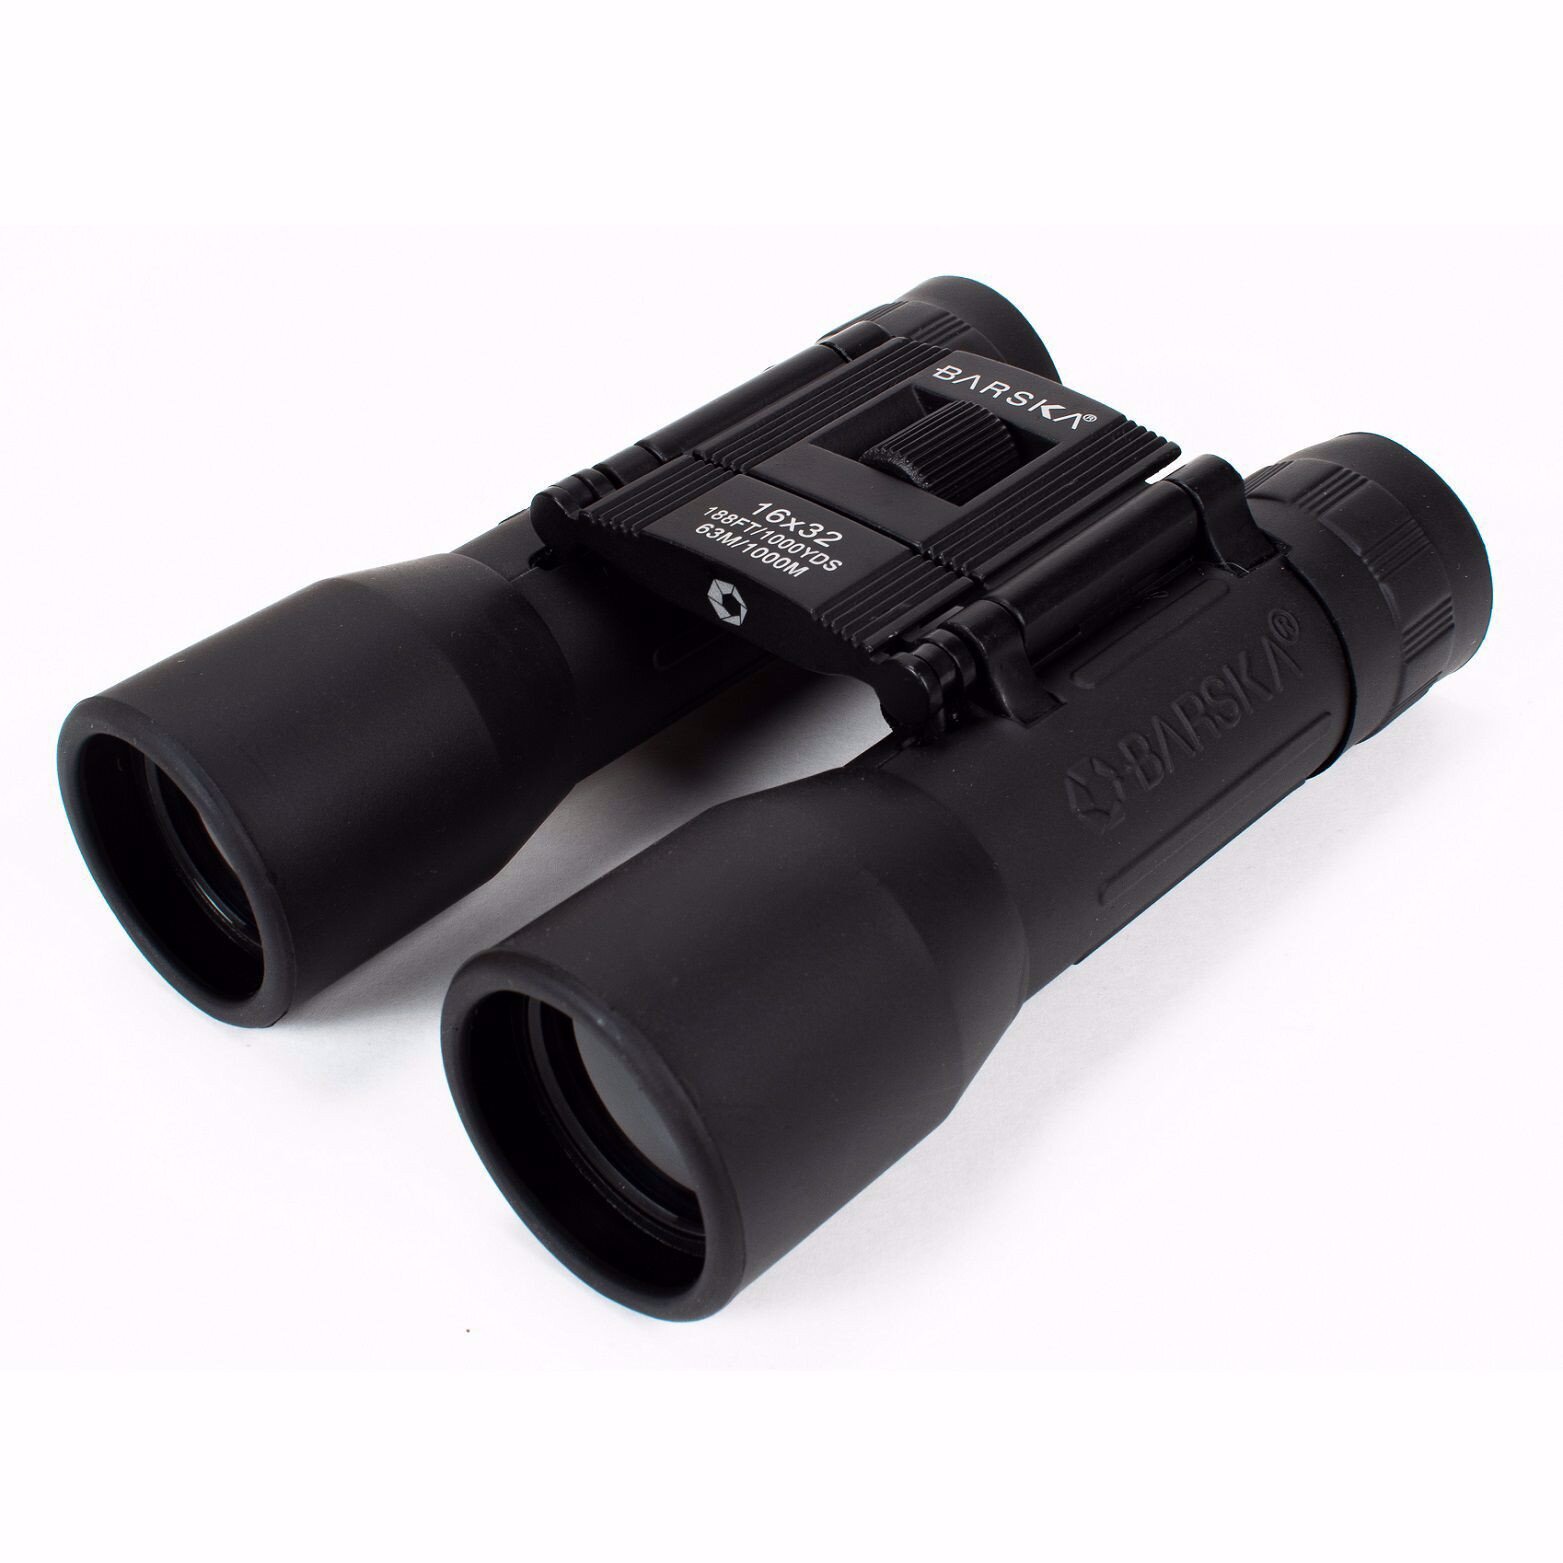 Buy Barska 16x32mm Lucid View Compact Binoculars Online In Pakistan